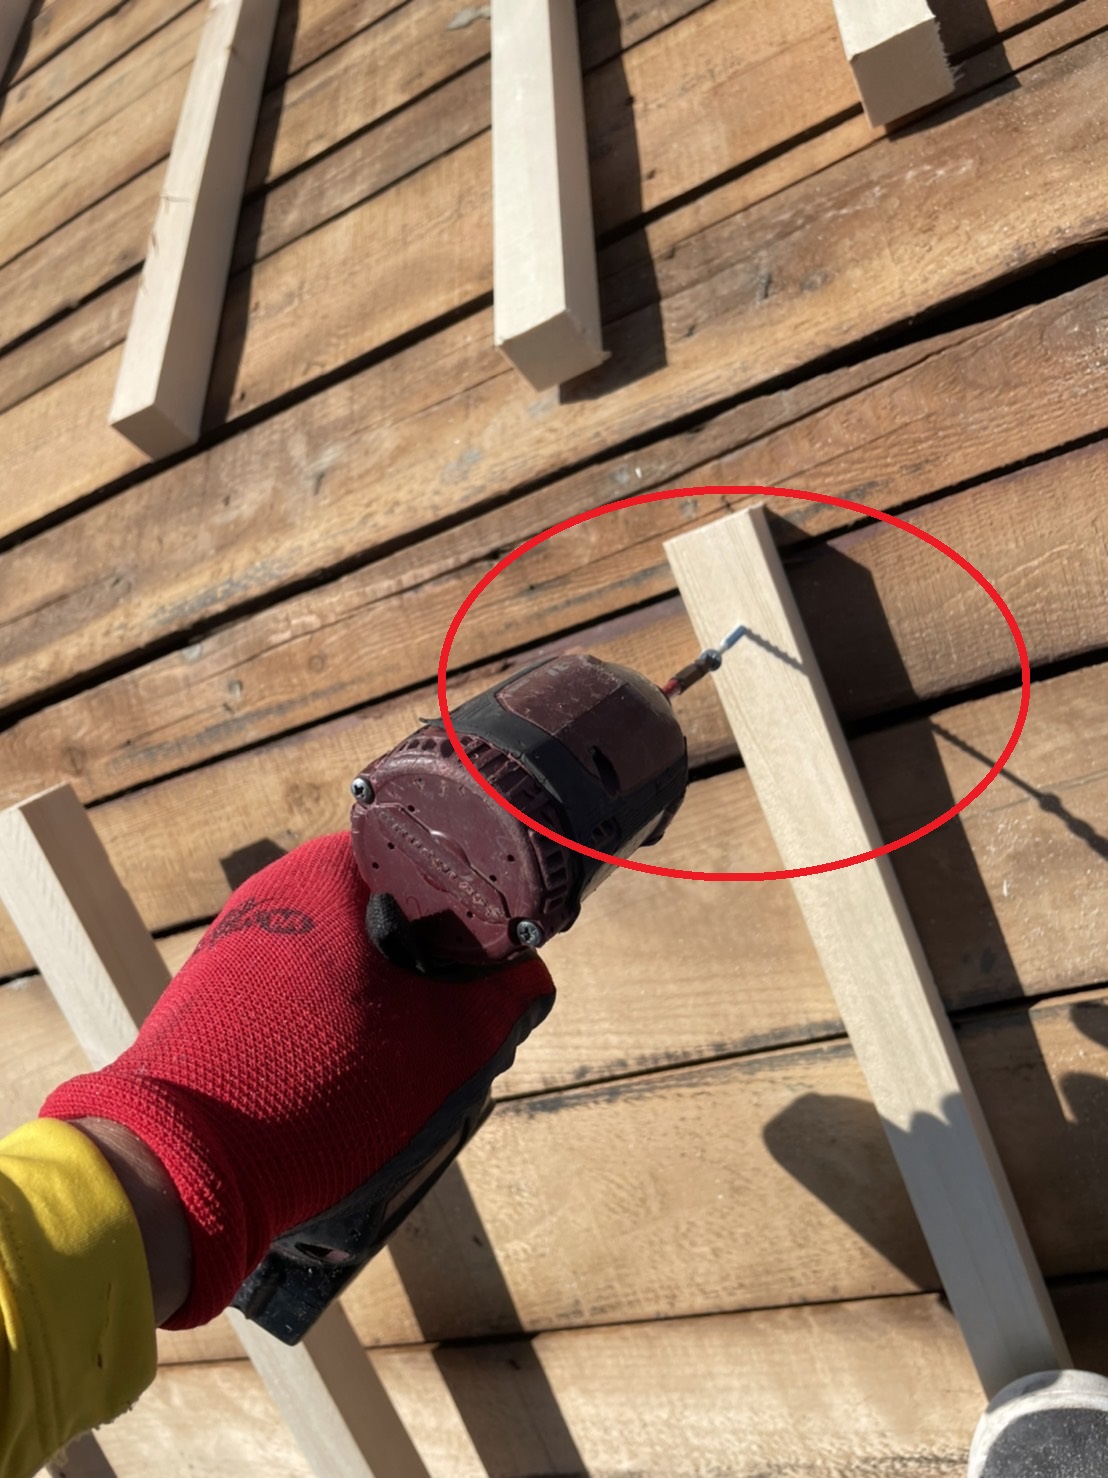 明石市での屋根下地補強工事で垂木をビス固定している様子